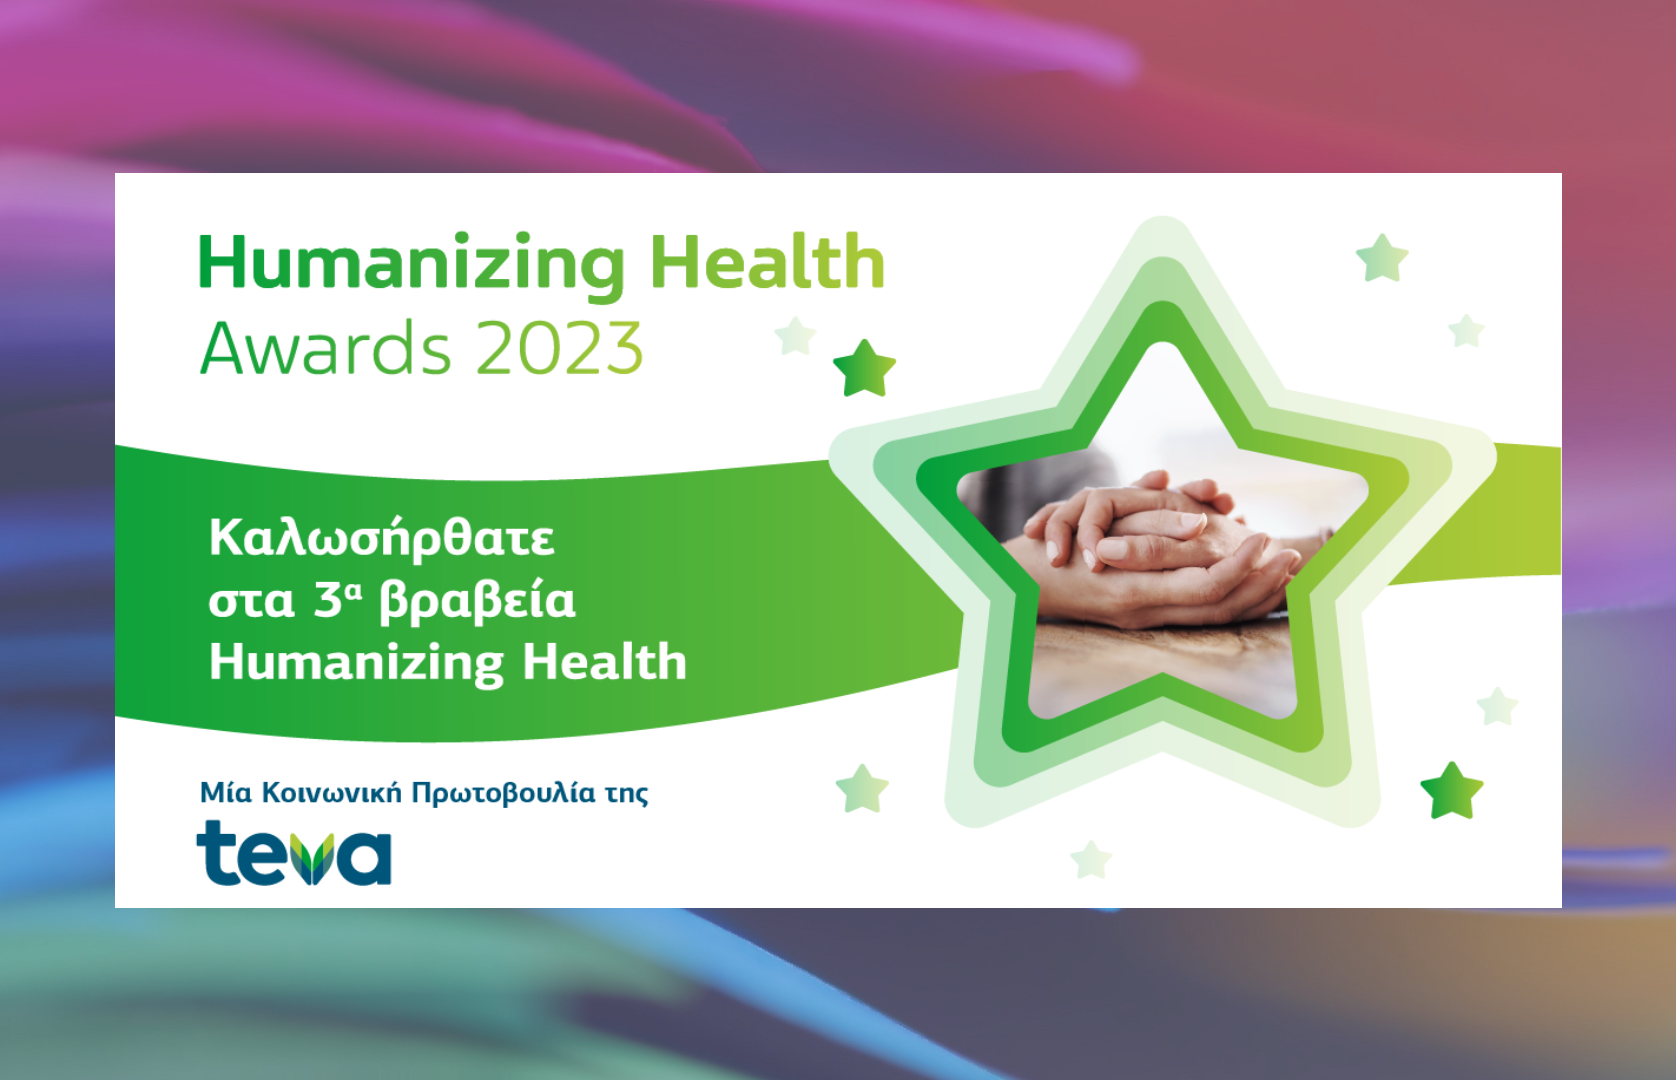 Τα βραβεία Humanizing Health της Teva επέστρεψαν για τρίτη χρονιά